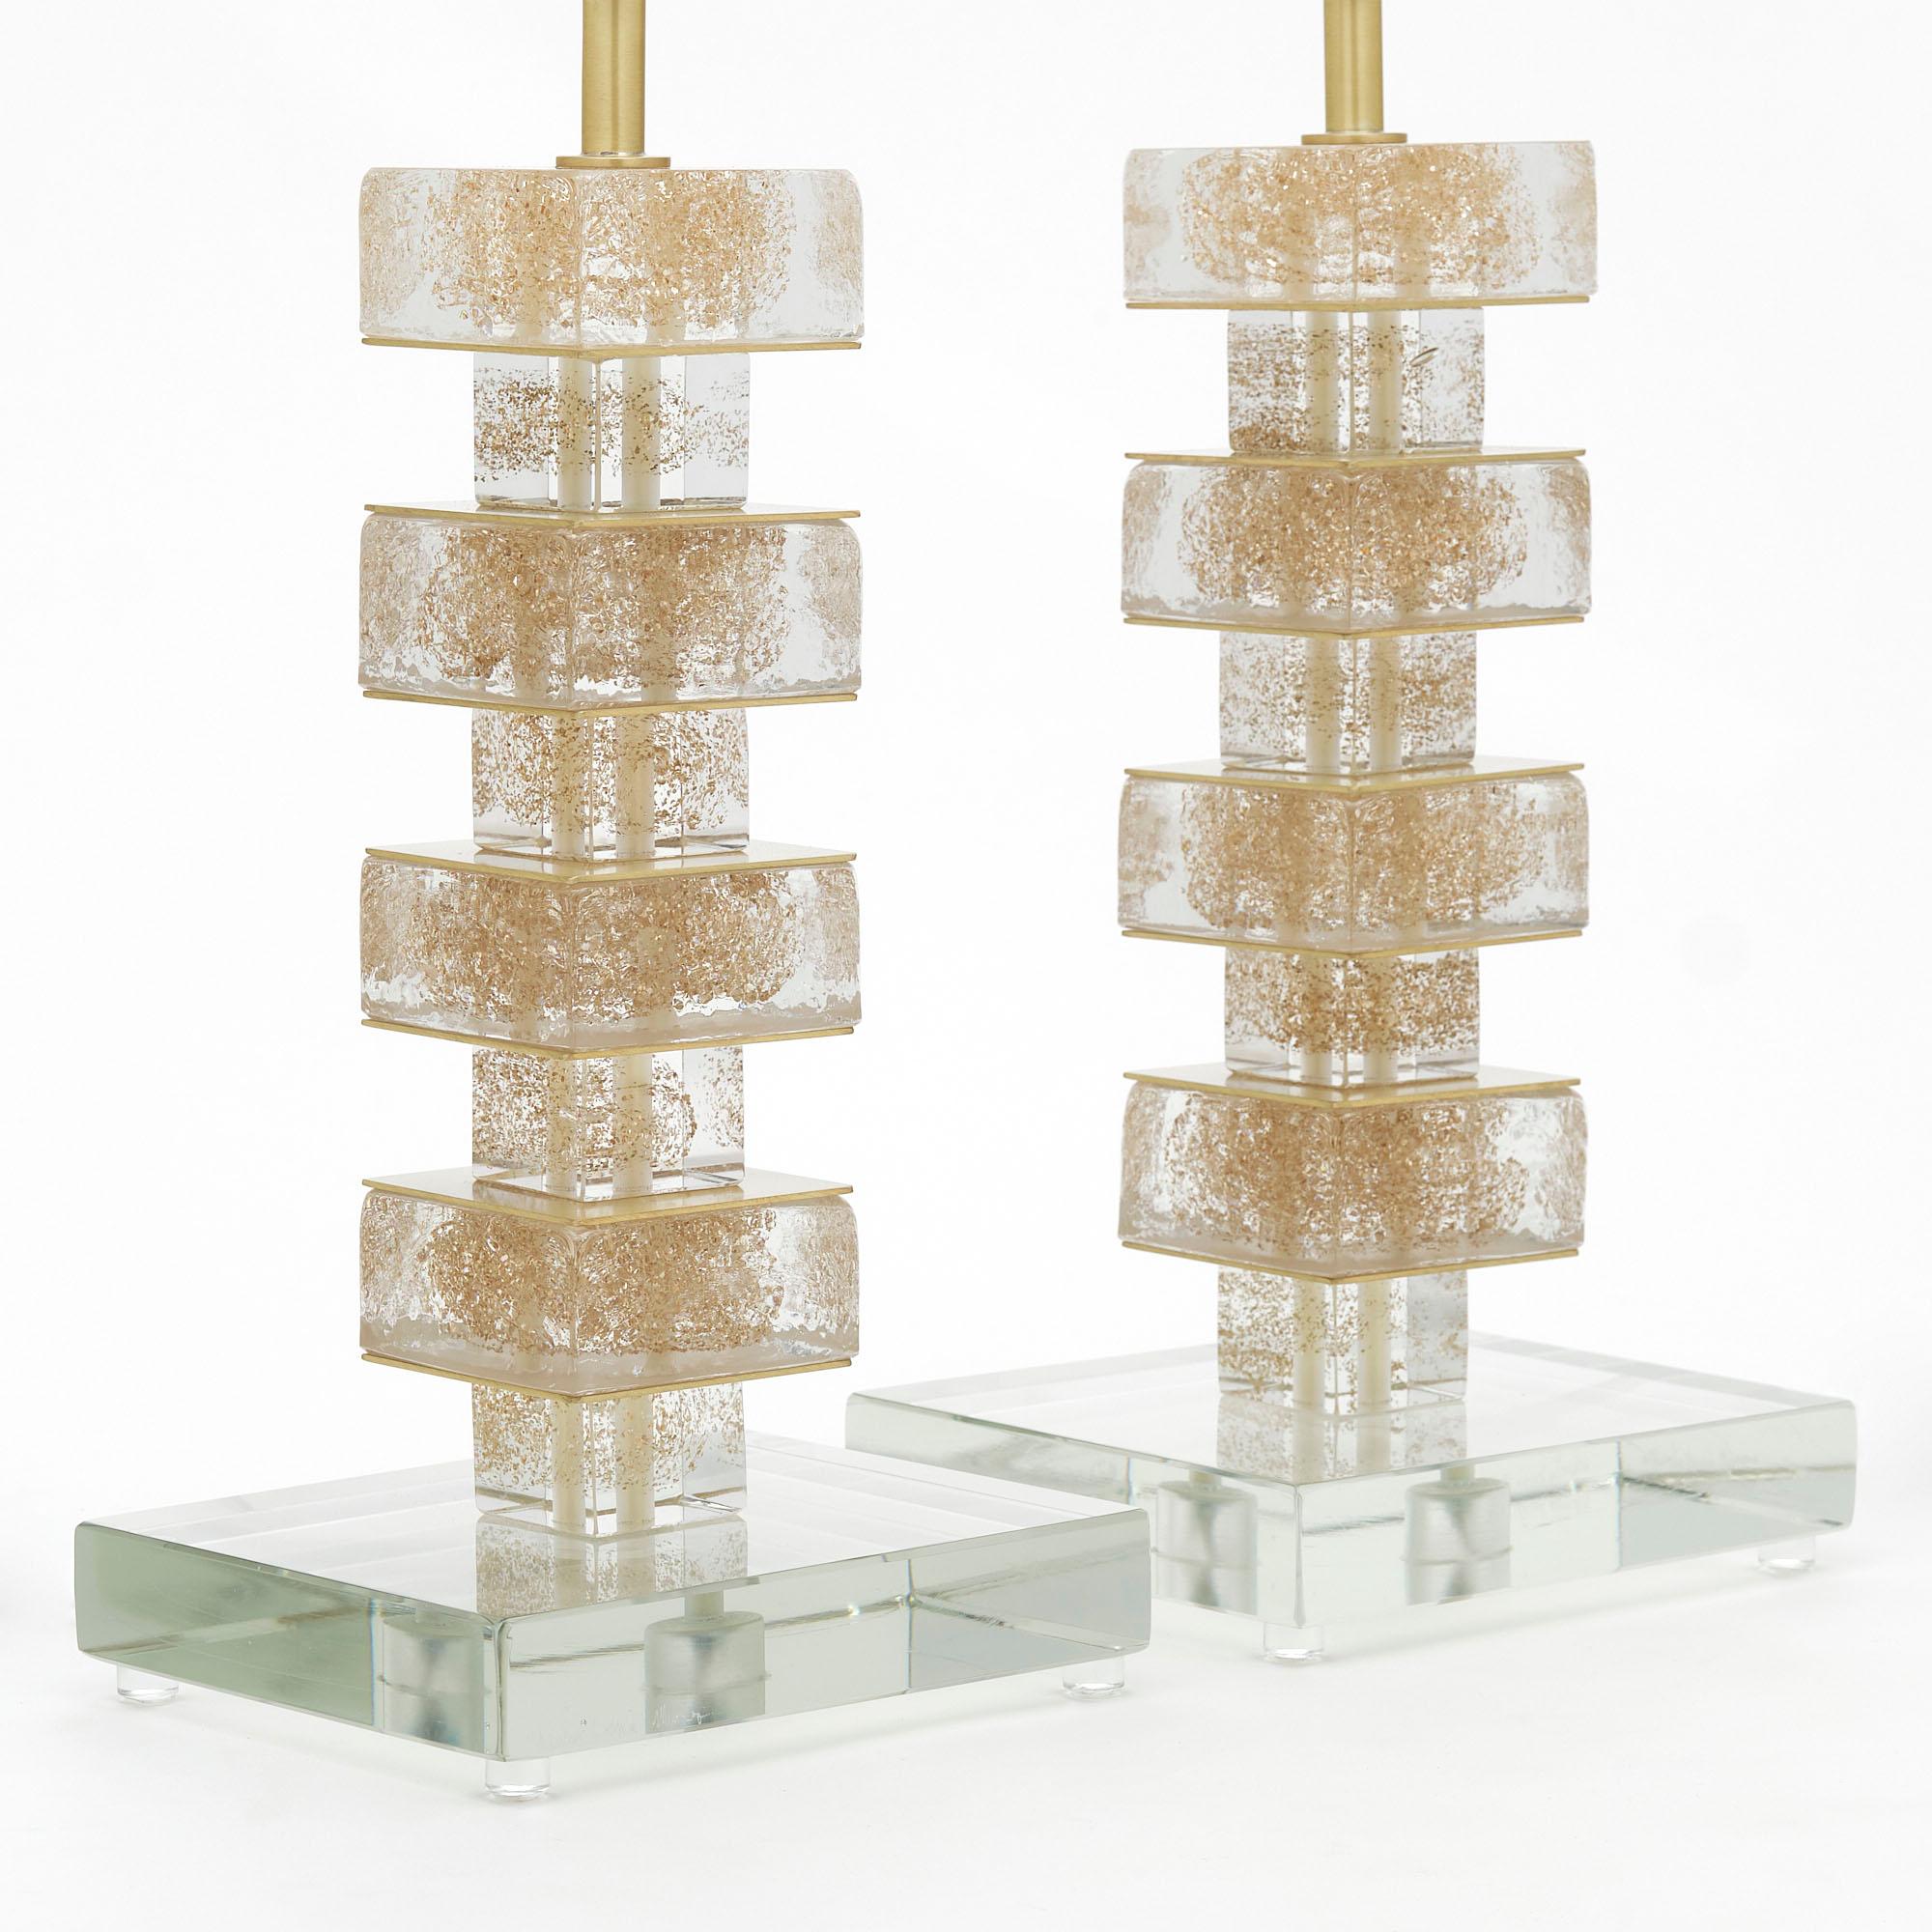 Ein Paar italienische Lampen von der Insel Murano. Diese zeitgenössischen Lampen zeichnen sich durch gestapelte kubische Elemente aus, die mit 24-karätigen Goldflecken durchzogen sind. Sie wurden nach US-Standard neu verkabelt.